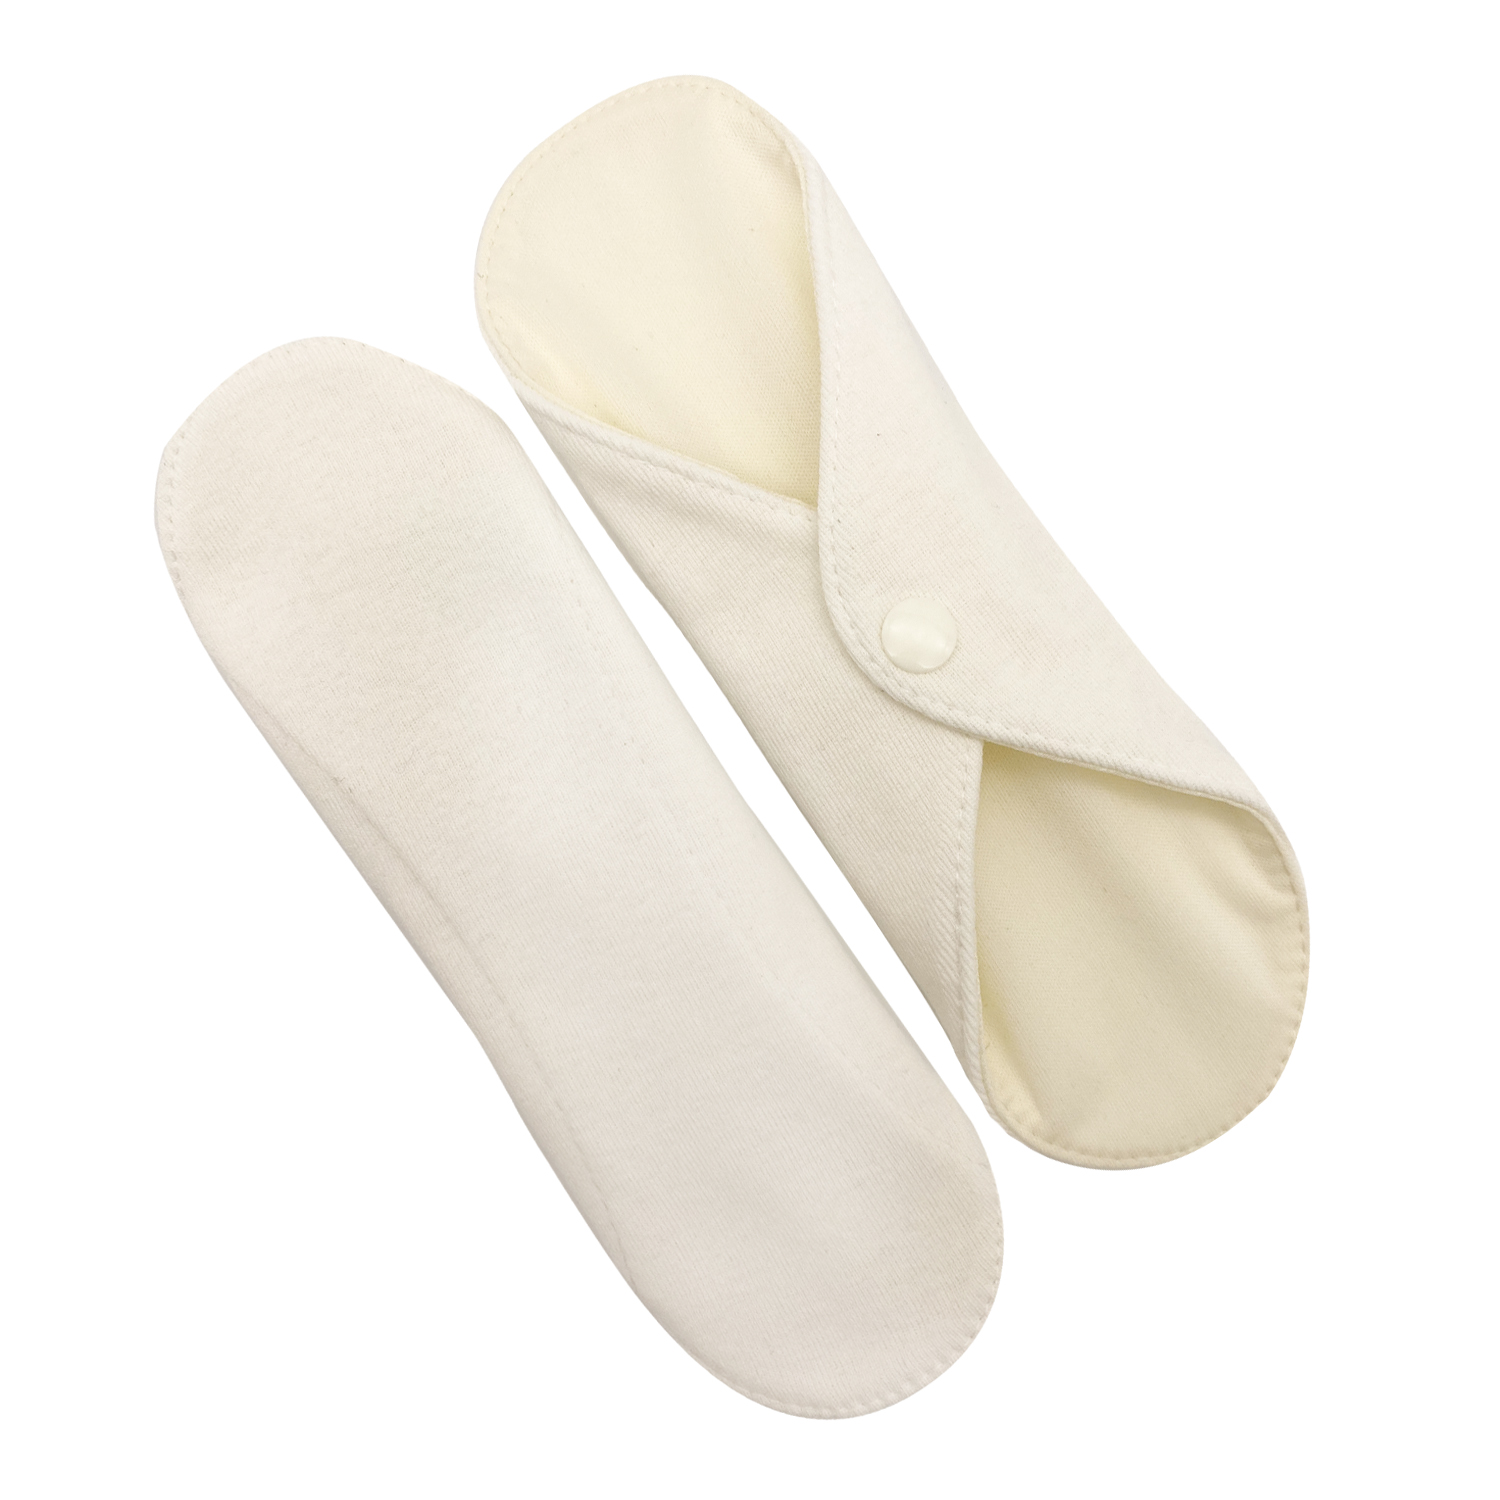 Прокладки для менструации многоразовые Mamalino бежевые набор 2 шт. размер Миди набор одноразовых воротничков без липкого слоя 8x40 см 100 шт в рулоне белый